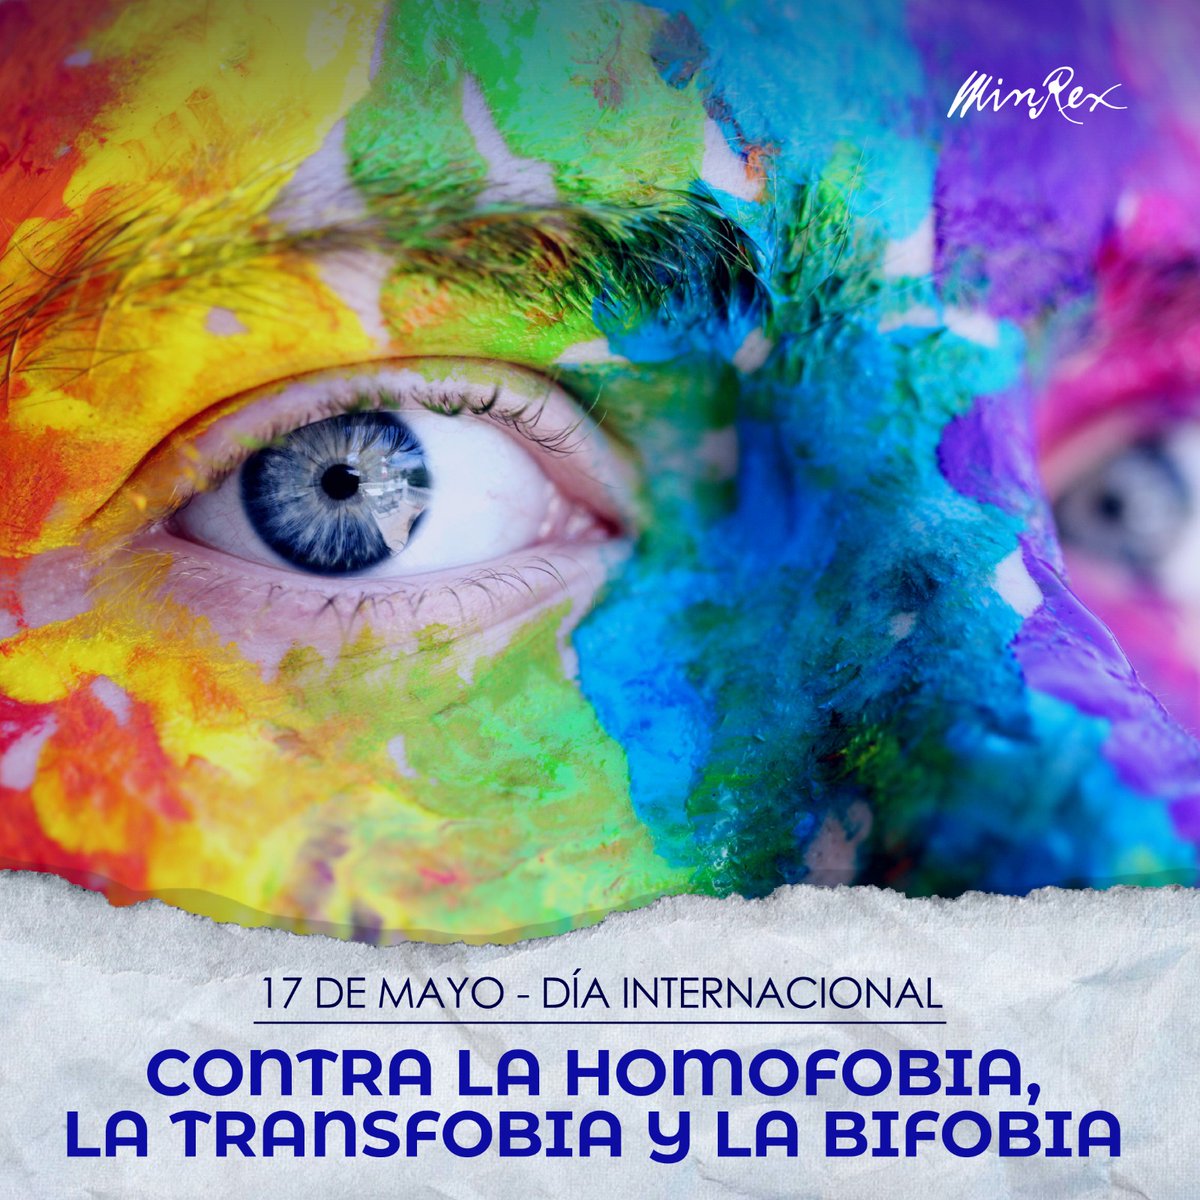 En este Día Internacional vs la Homofobia, la Transfobia y la Bifobia, reiteramos compromiso de #Cuba con que todas las personas reciban la misma protección y trato y gocen de los mismos derechos, sin discriminación por su orientación sexual o identidad de género.